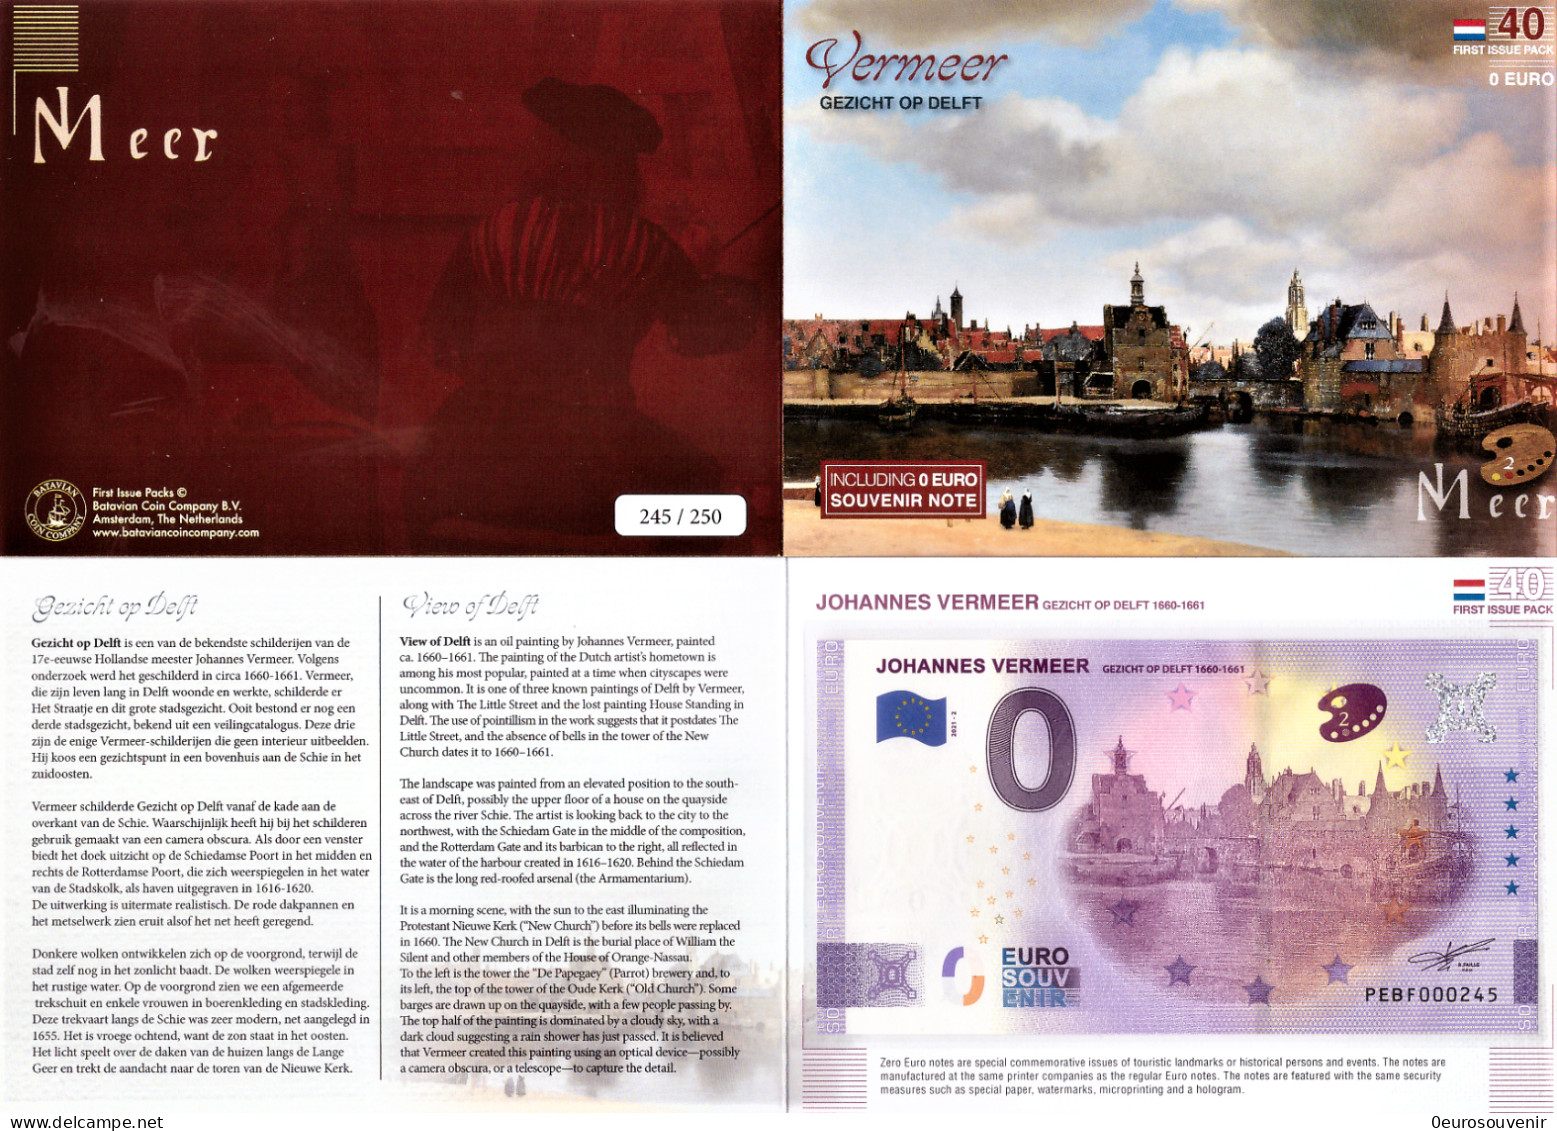 0-Euro PEBF 2021-2 JOHANNES VERMEER - GEZICHT OP DELFT 1660-1661 First Issue Pack No. Nur Bis #250 ! - Pruebas Privadas